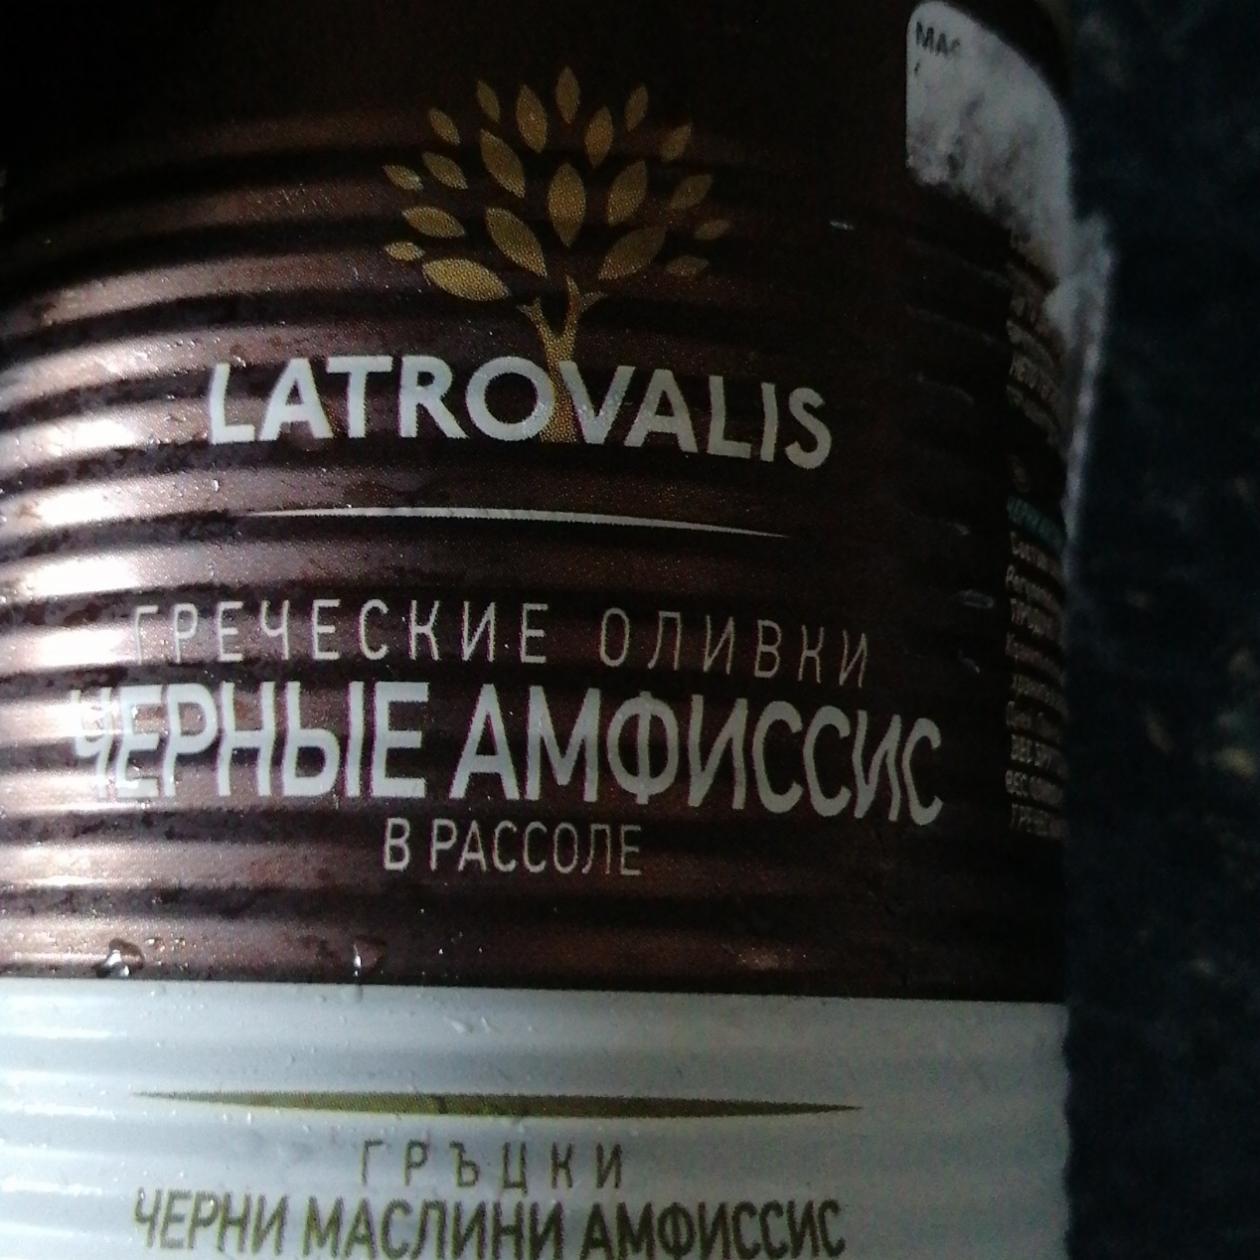 Фото - Греческие оливки черные амфиссис Latrovalis